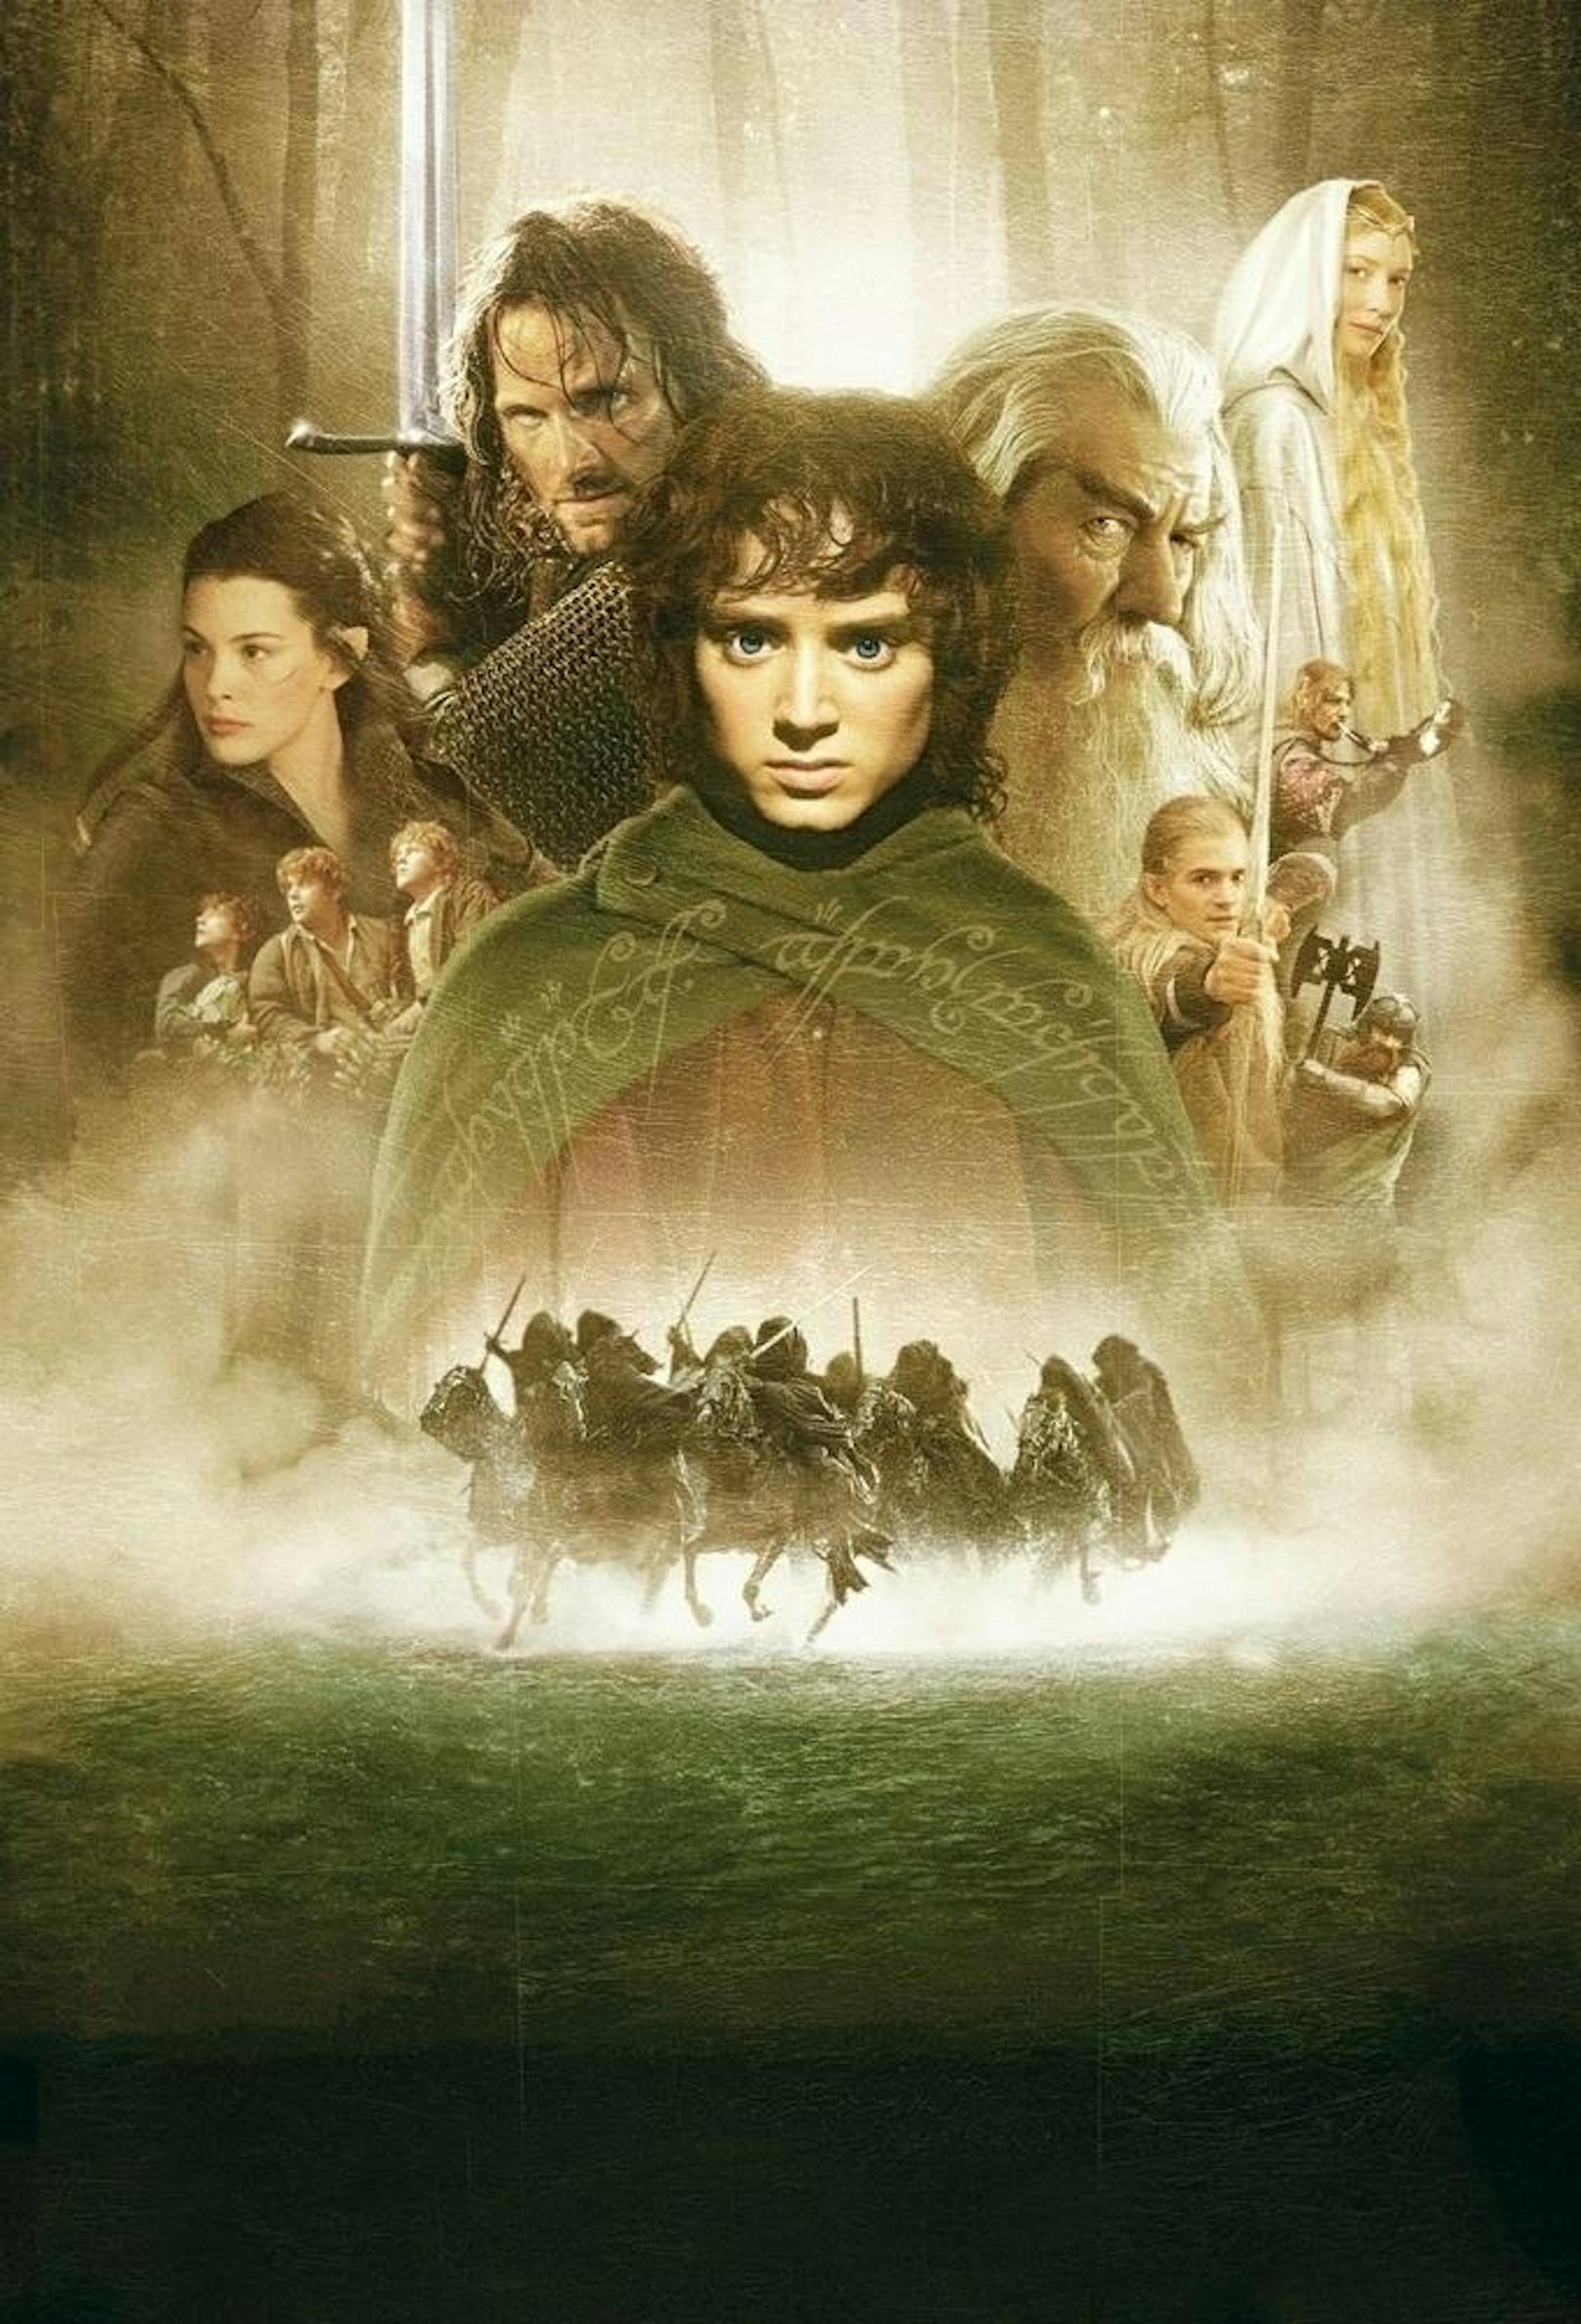 Plakatmotiv: Um ihre Freiheit zu retten, schließen sich Elben, Hobbits, Zwerge, Zauberer und Menschen zusammen und nehmen den Kampf gegen das Böse auf.